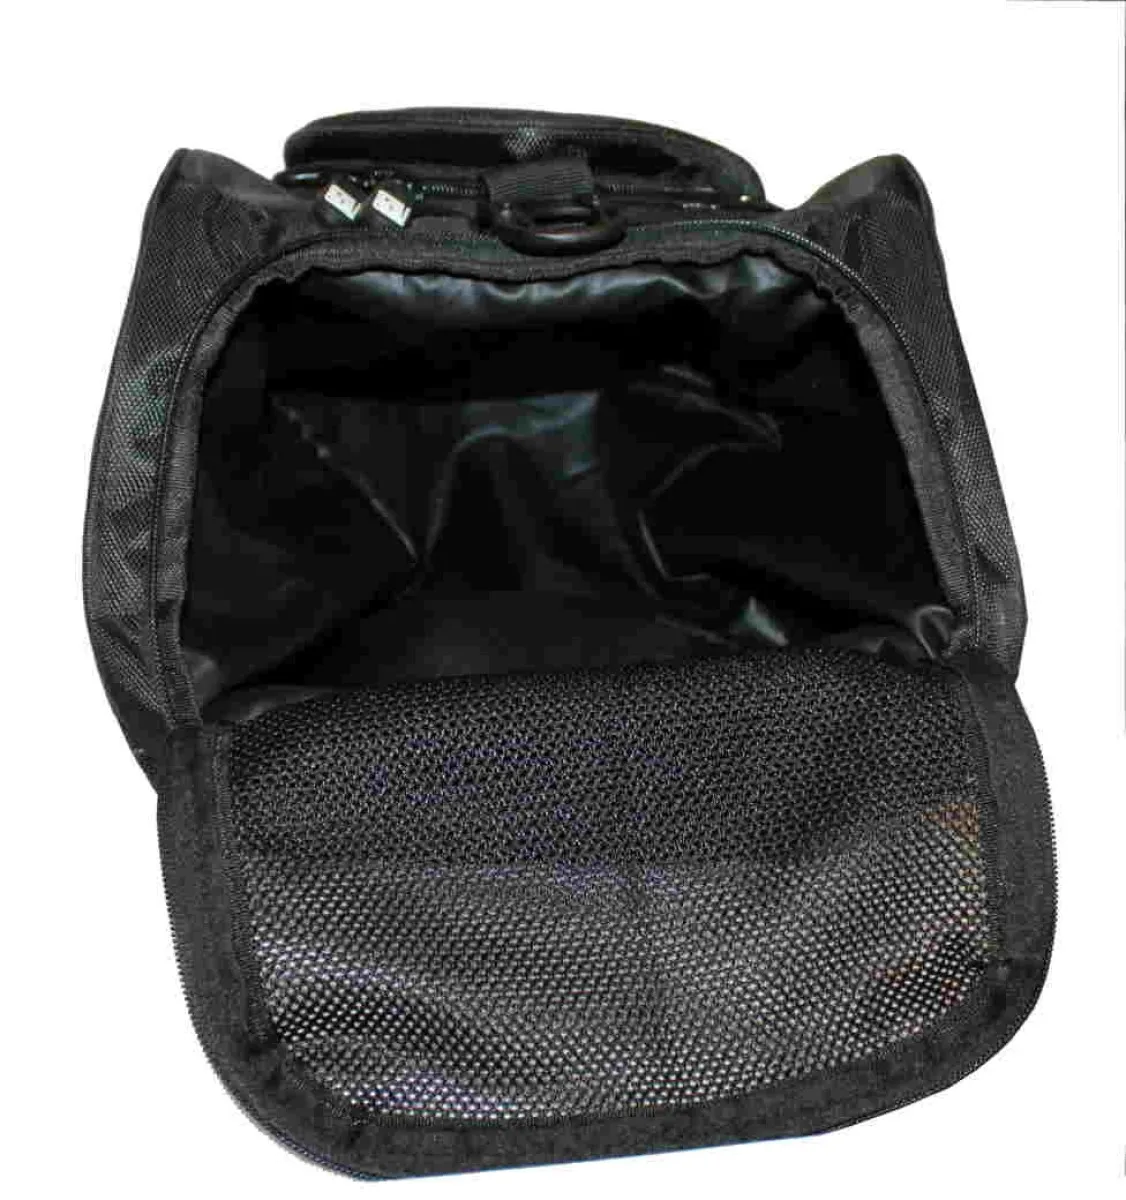 Sporttasche mit Rucksackfunktion in schwarz mit farbligen Seiteneinsätzen